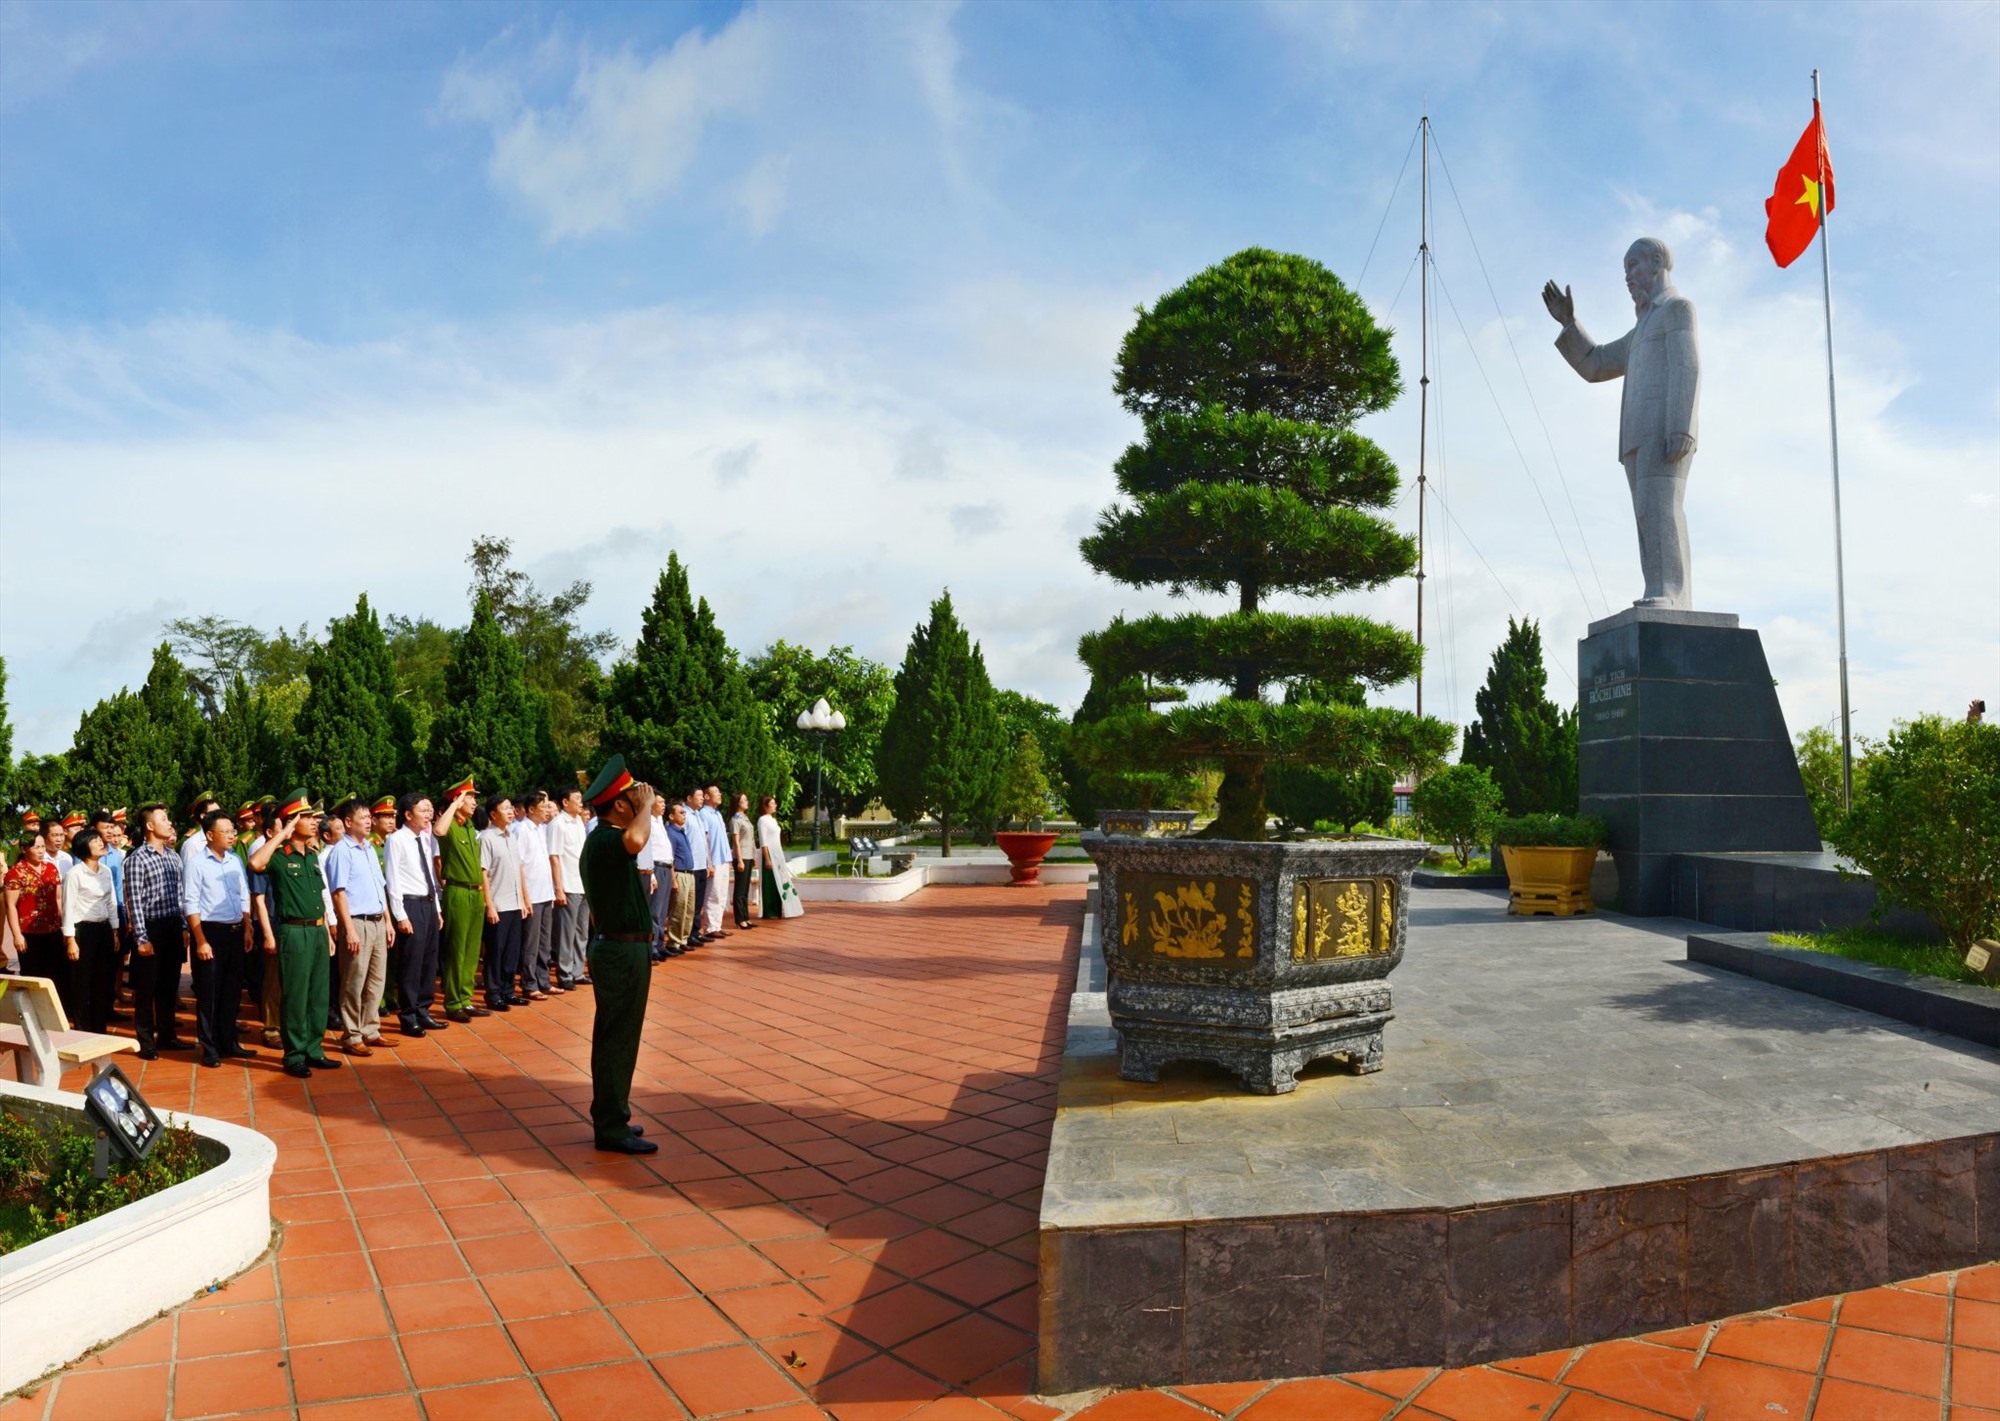 Khu Di tích lưu niệm Bác Hồ trên đảo Cô Tô là một trong những “Di tích” đặc biệt quan trọng đã được Bộ Văn hóa - Thông tin cấp Bằng công nhận là “Di tích lịch sử” số 985 QĐ/VH, ngày 7-5-1997.